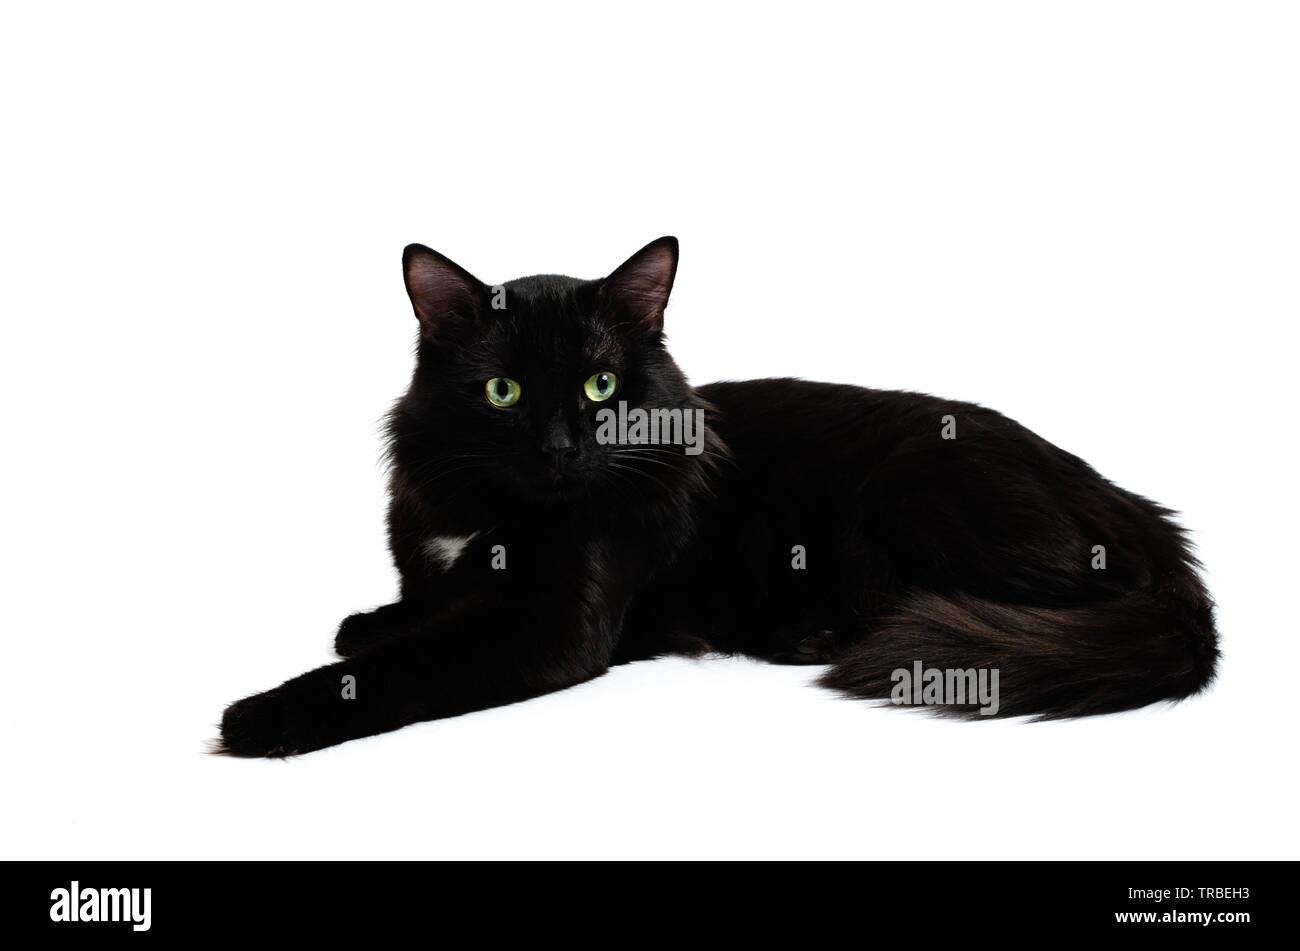 Gato negro macho Imágenes recortadas de stock - Página 2 - Alamy